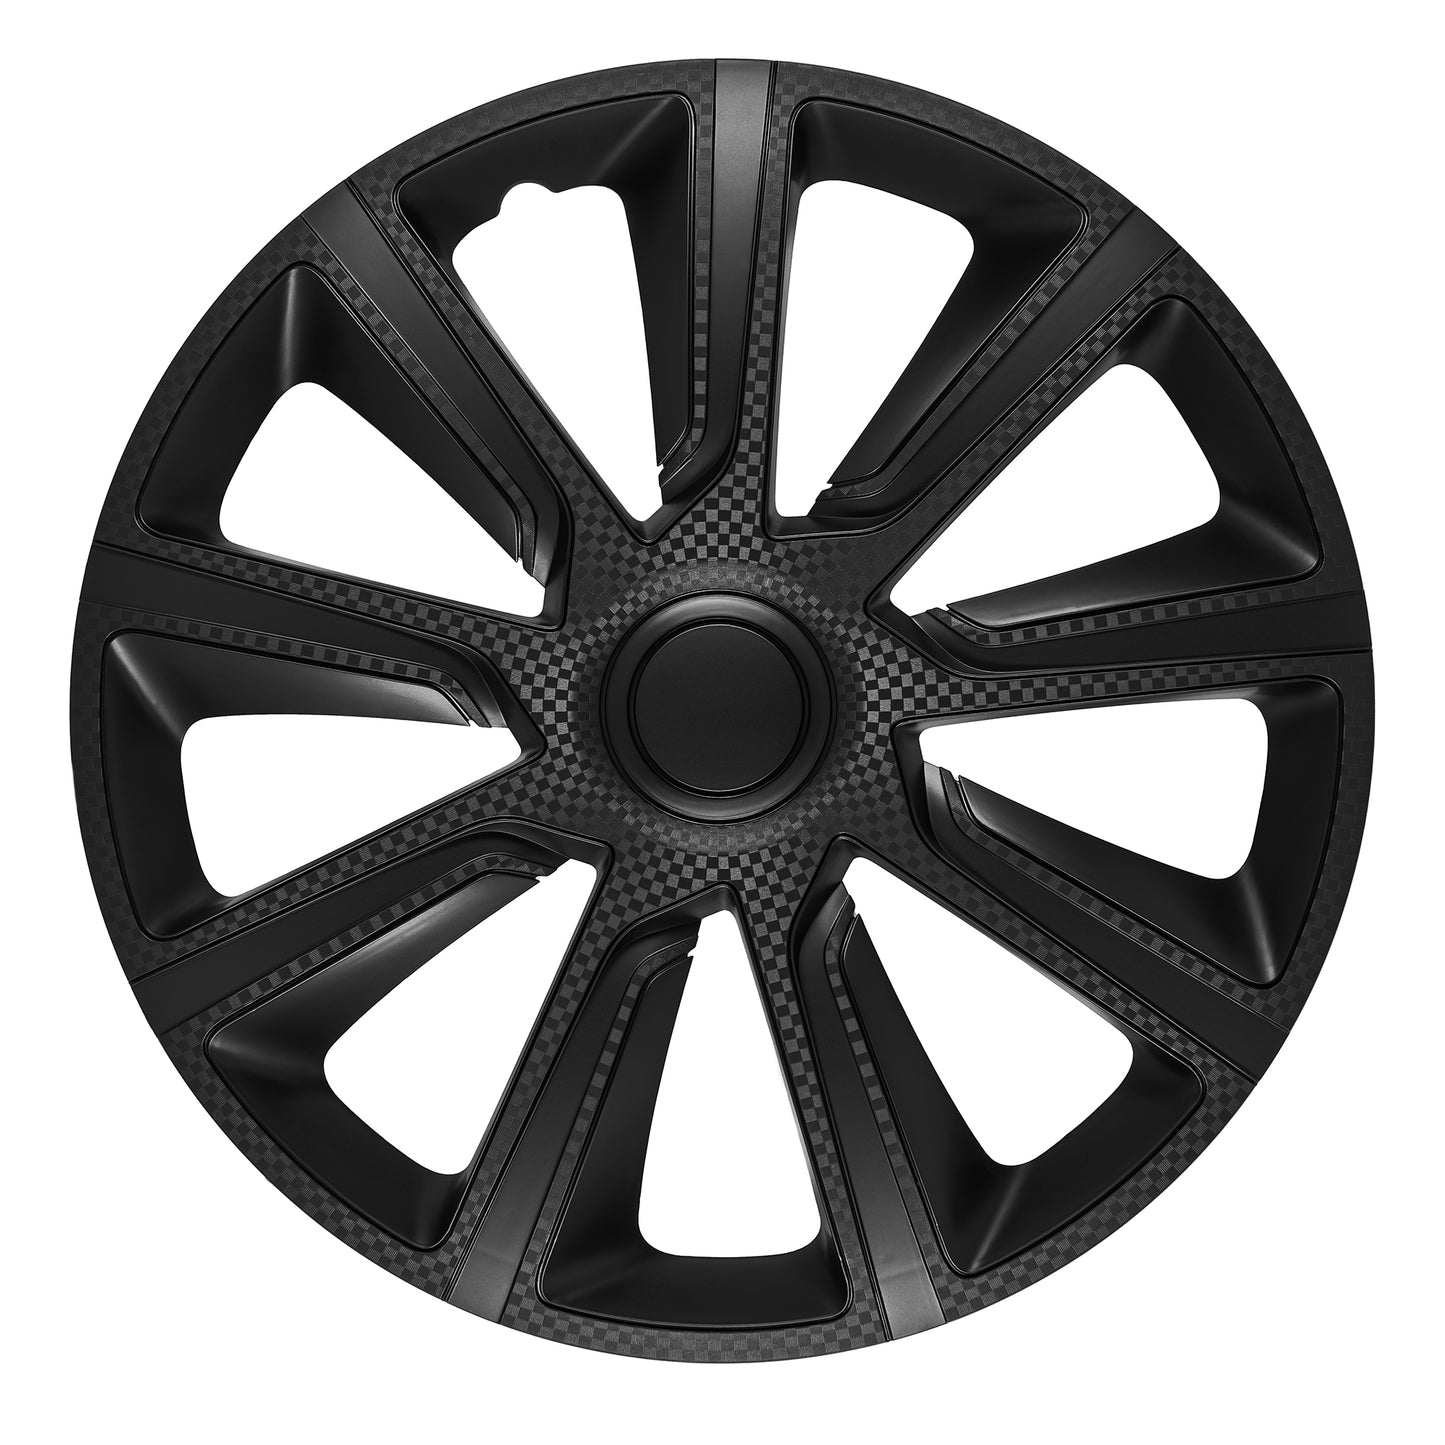 Ivo Carbon Wheel Cover Kit - Black (4 Pack)